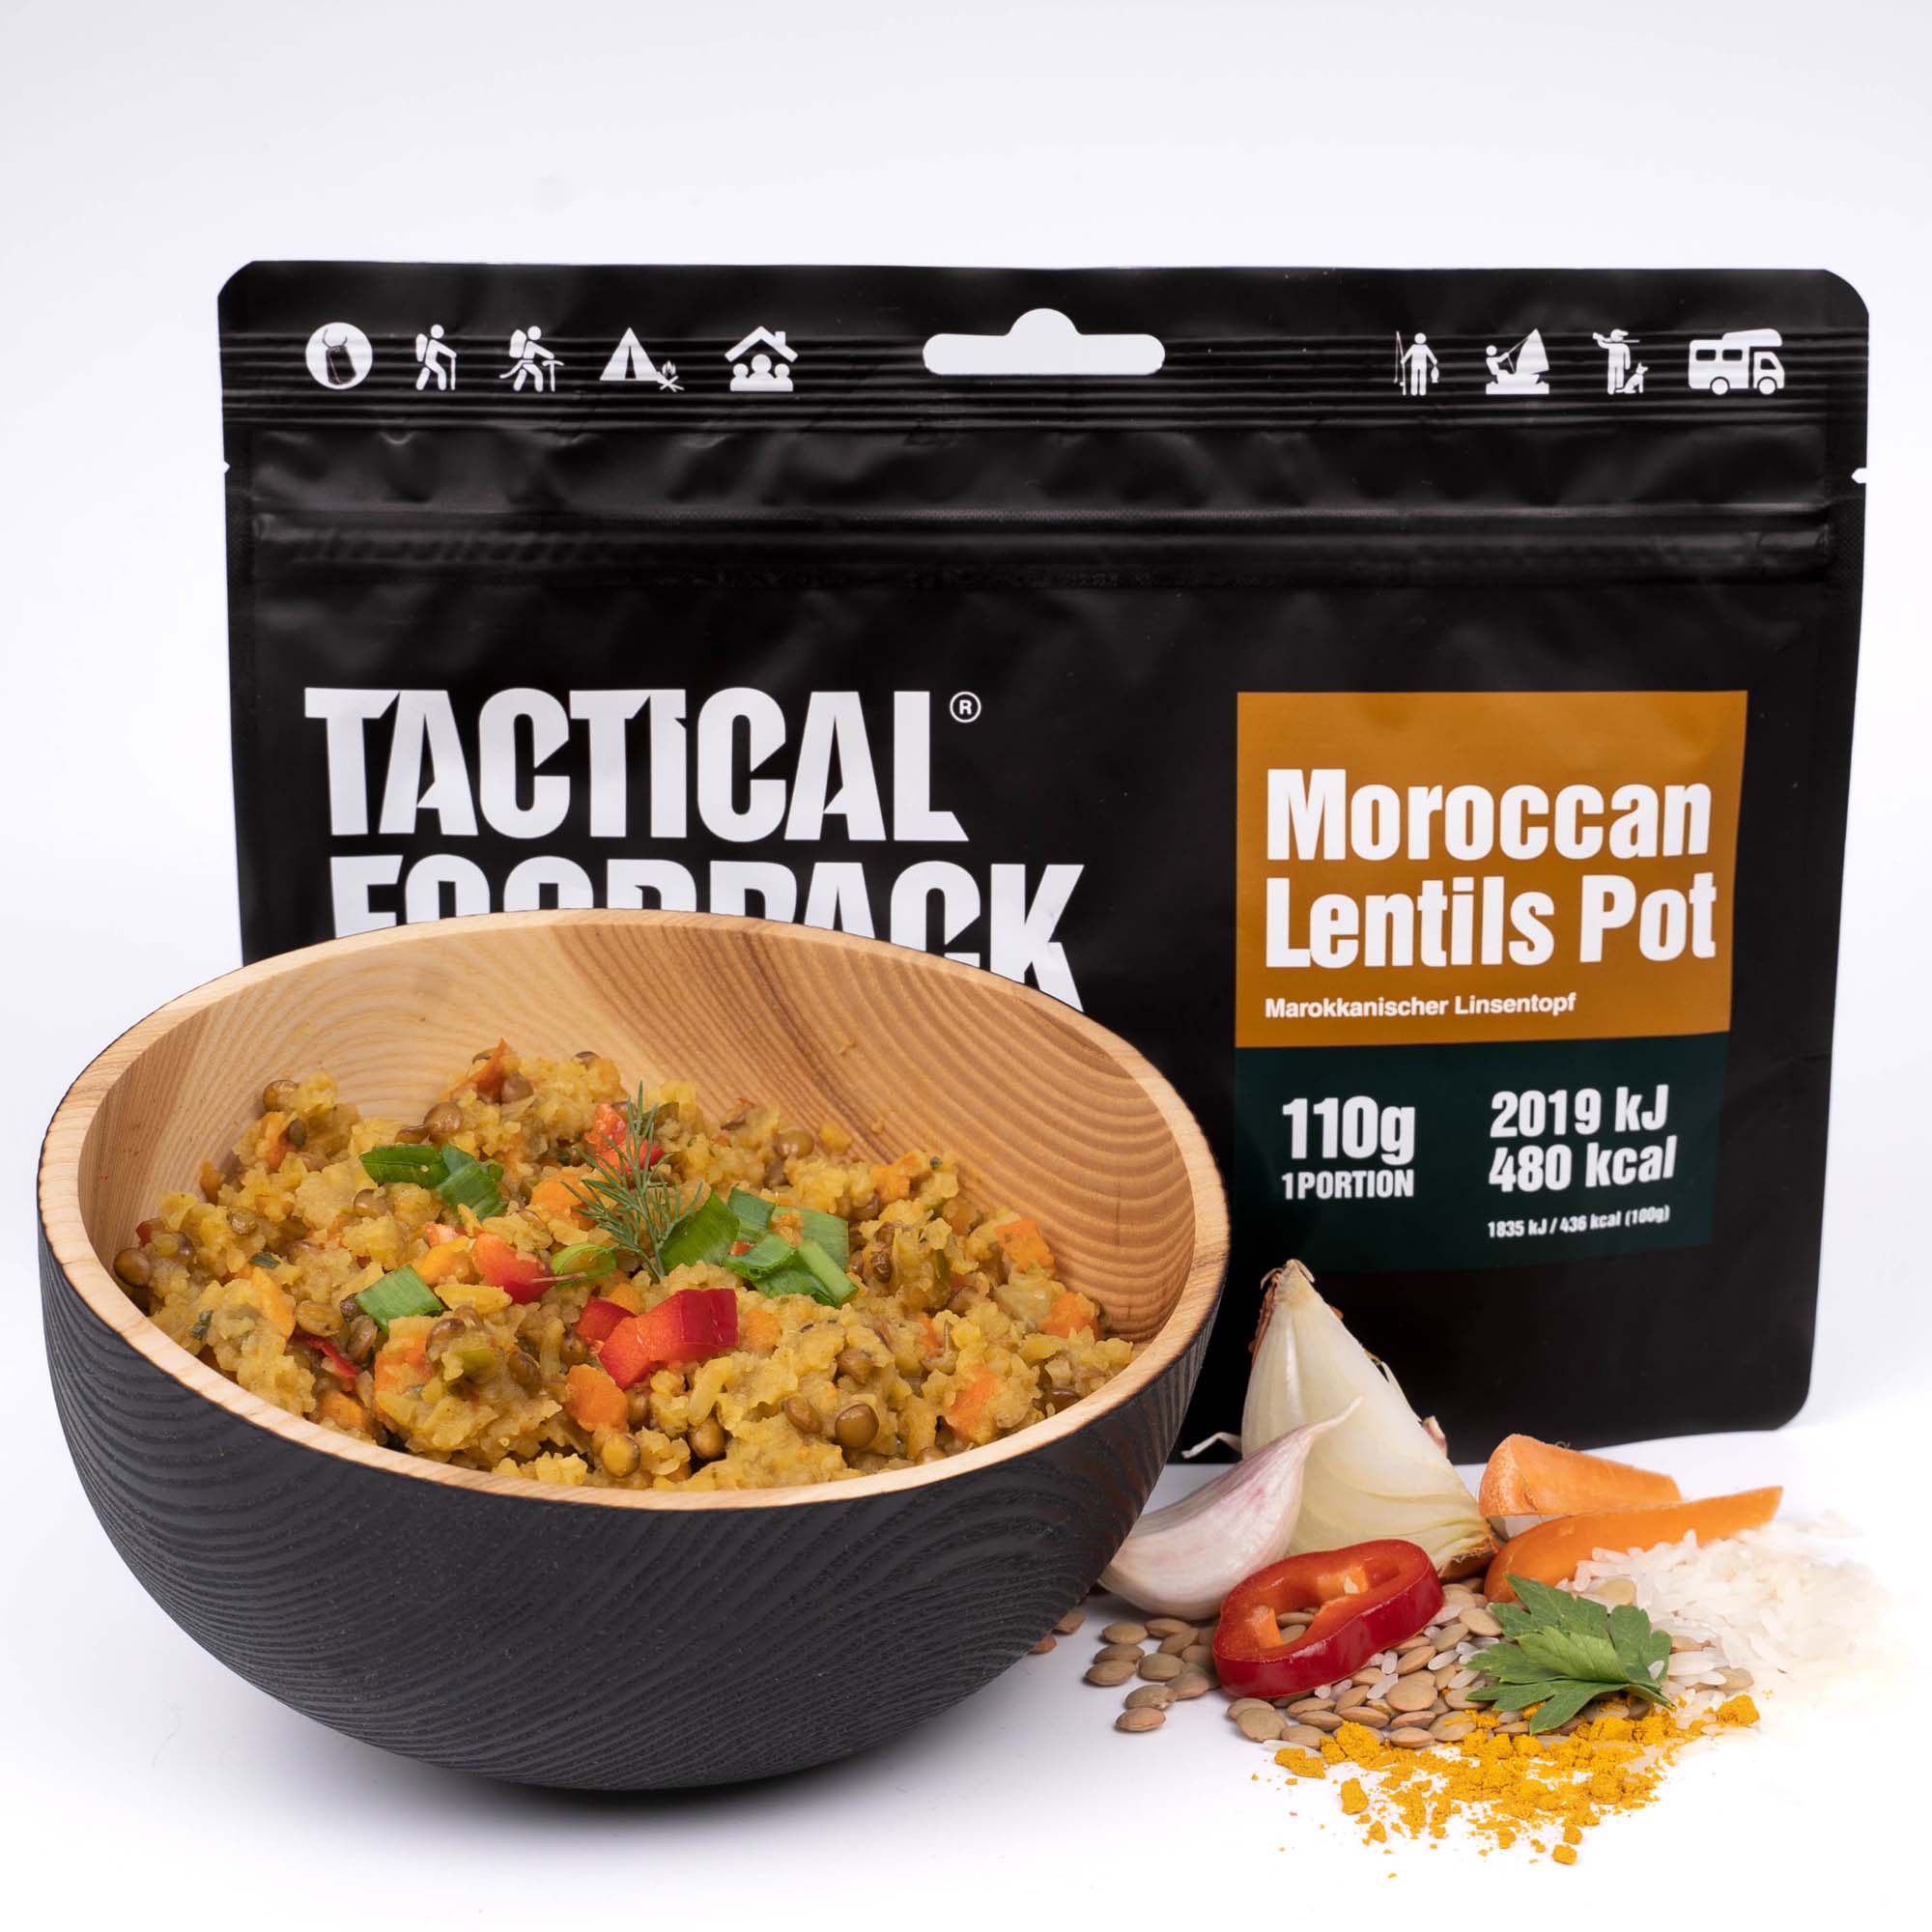 Tactical_foodpack_moroccan_lentils_pot